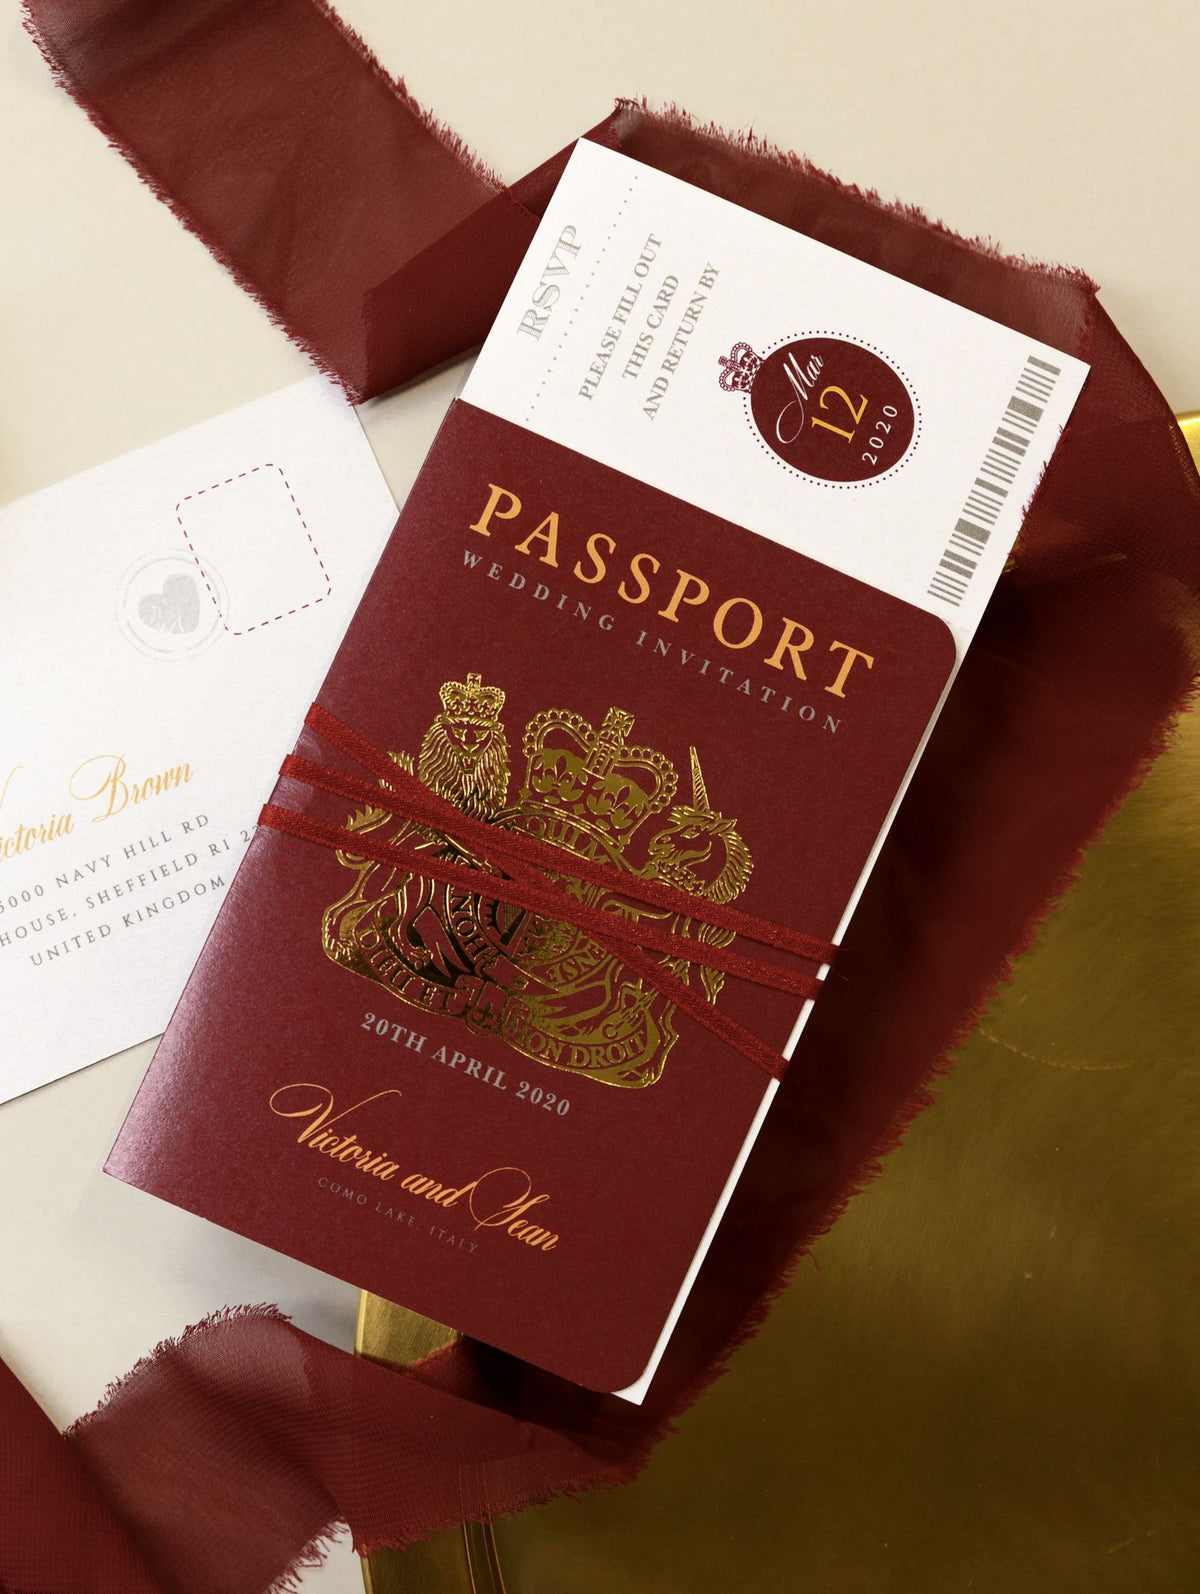 Invitation de mariage de passeport Red profond royal avec feuille de bandoulière Sinkmering Style RSVP